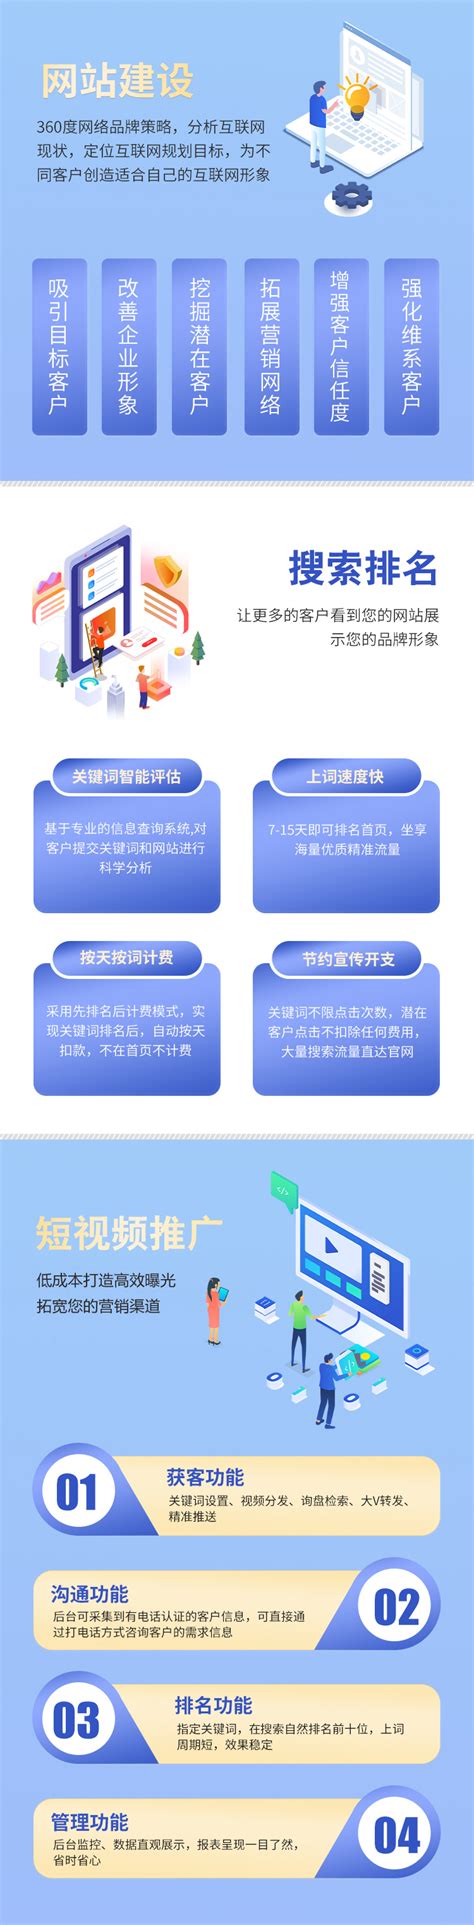 浙江网站建设开发公司